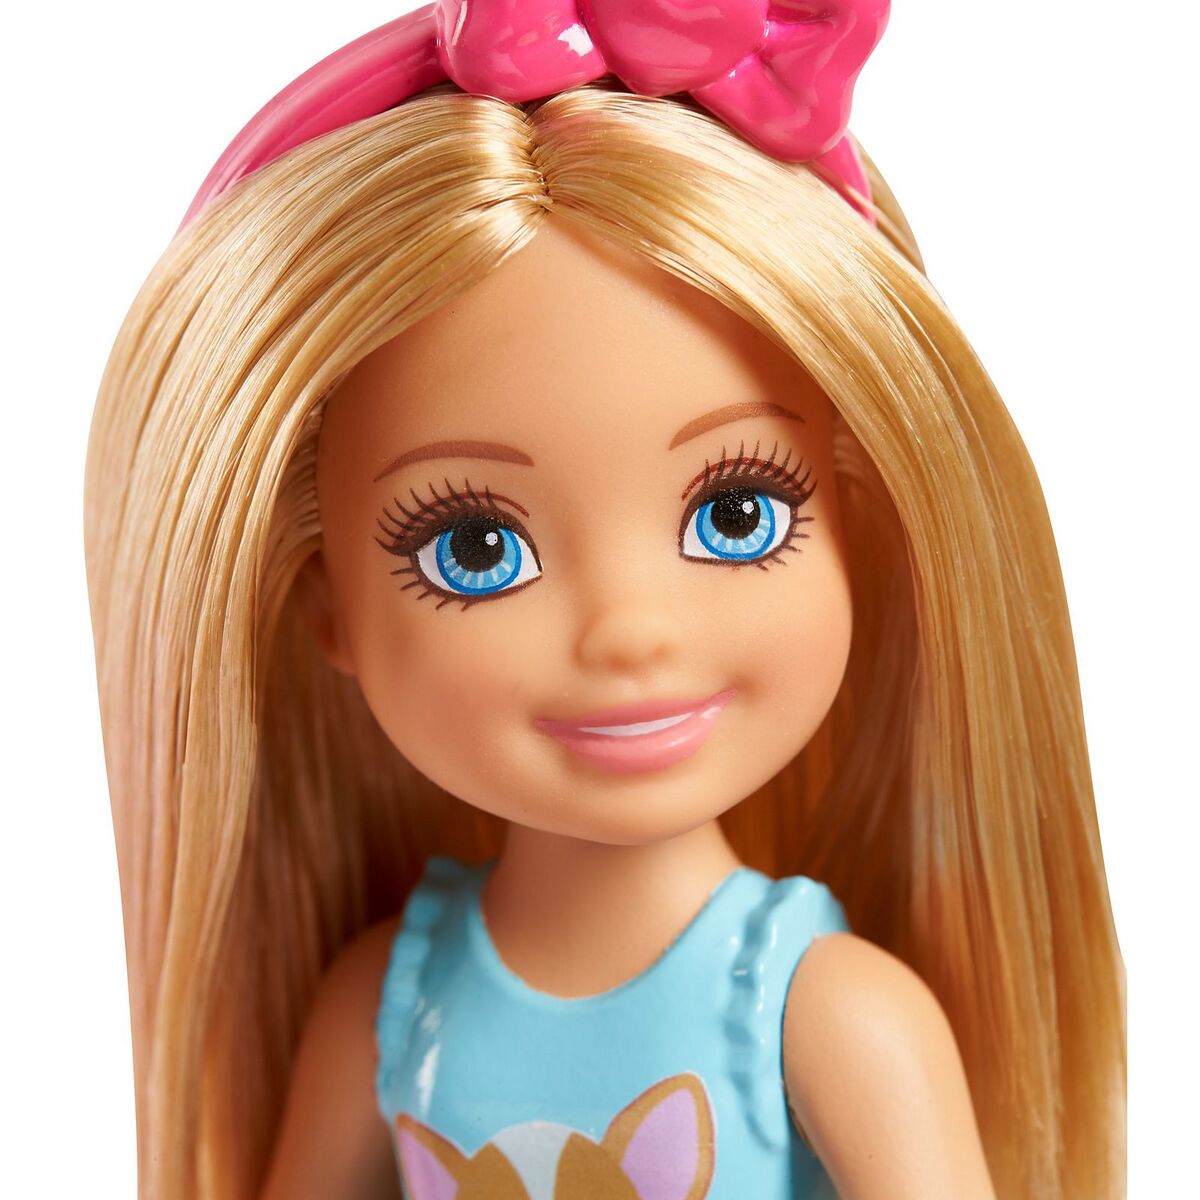 Chelsea | Barbie Wiki | Fandom